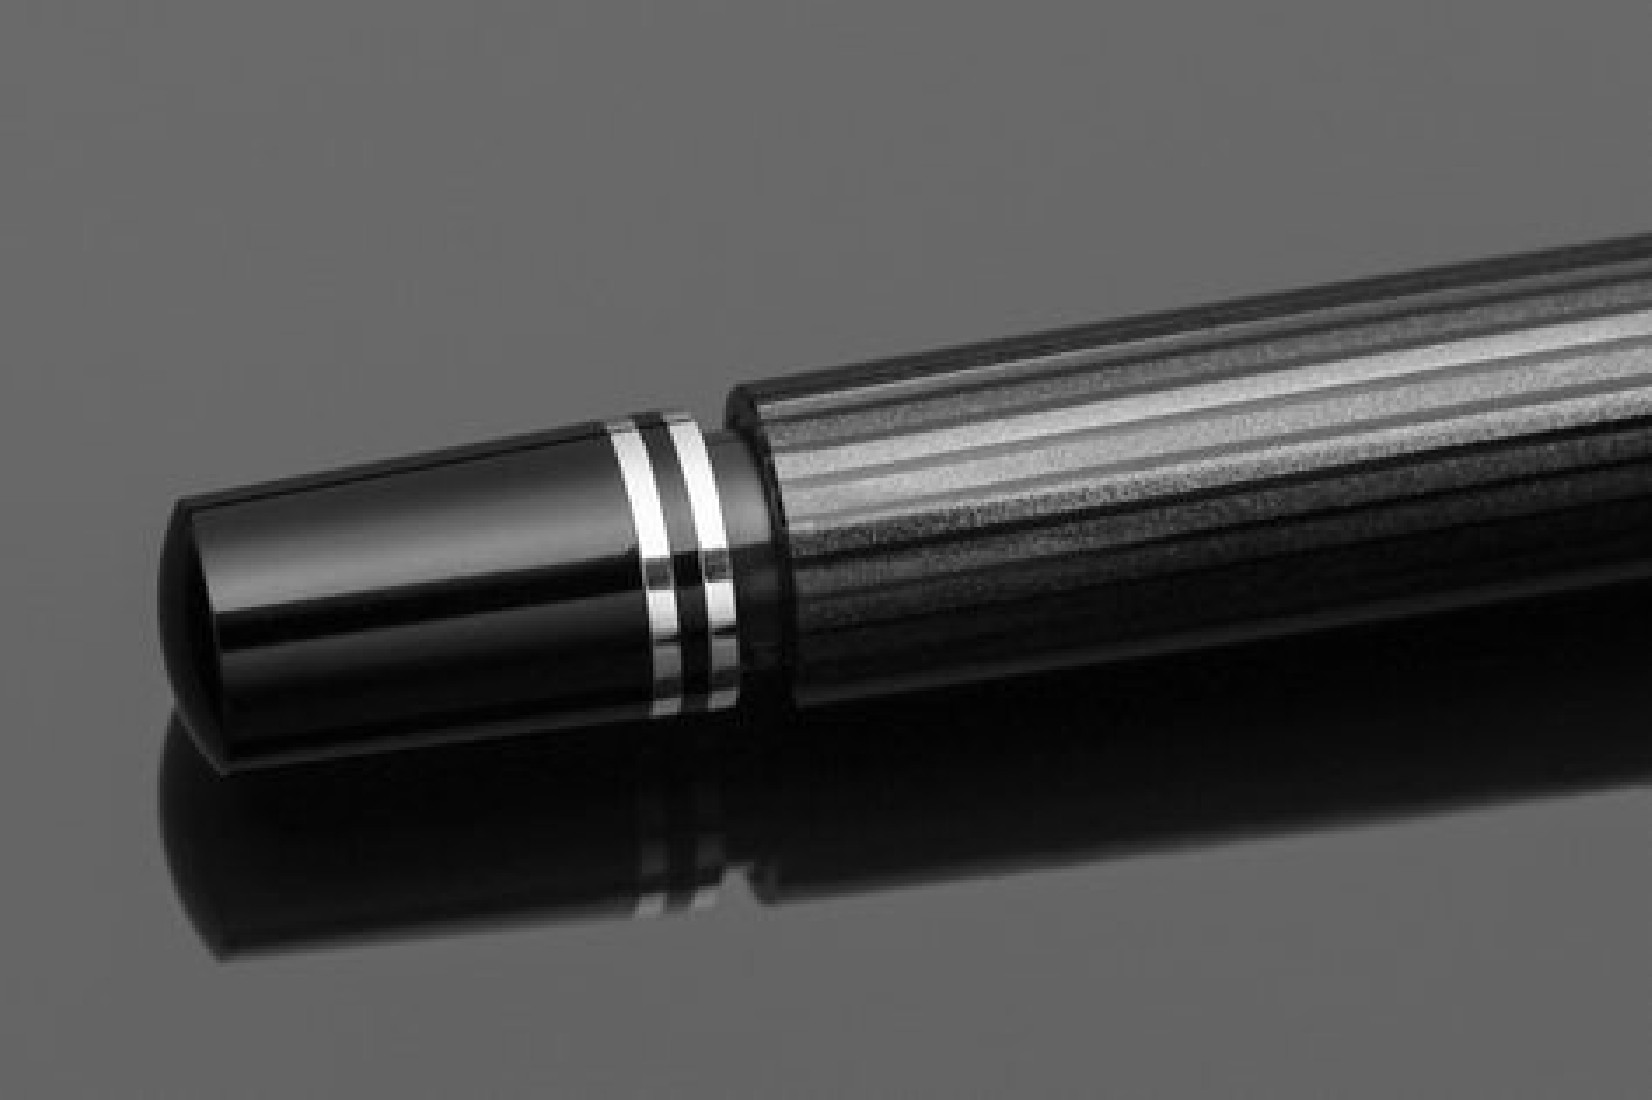 Pelikan Souveran M405 Stresemann Fountain Pen Fine/Medium/Broad nib